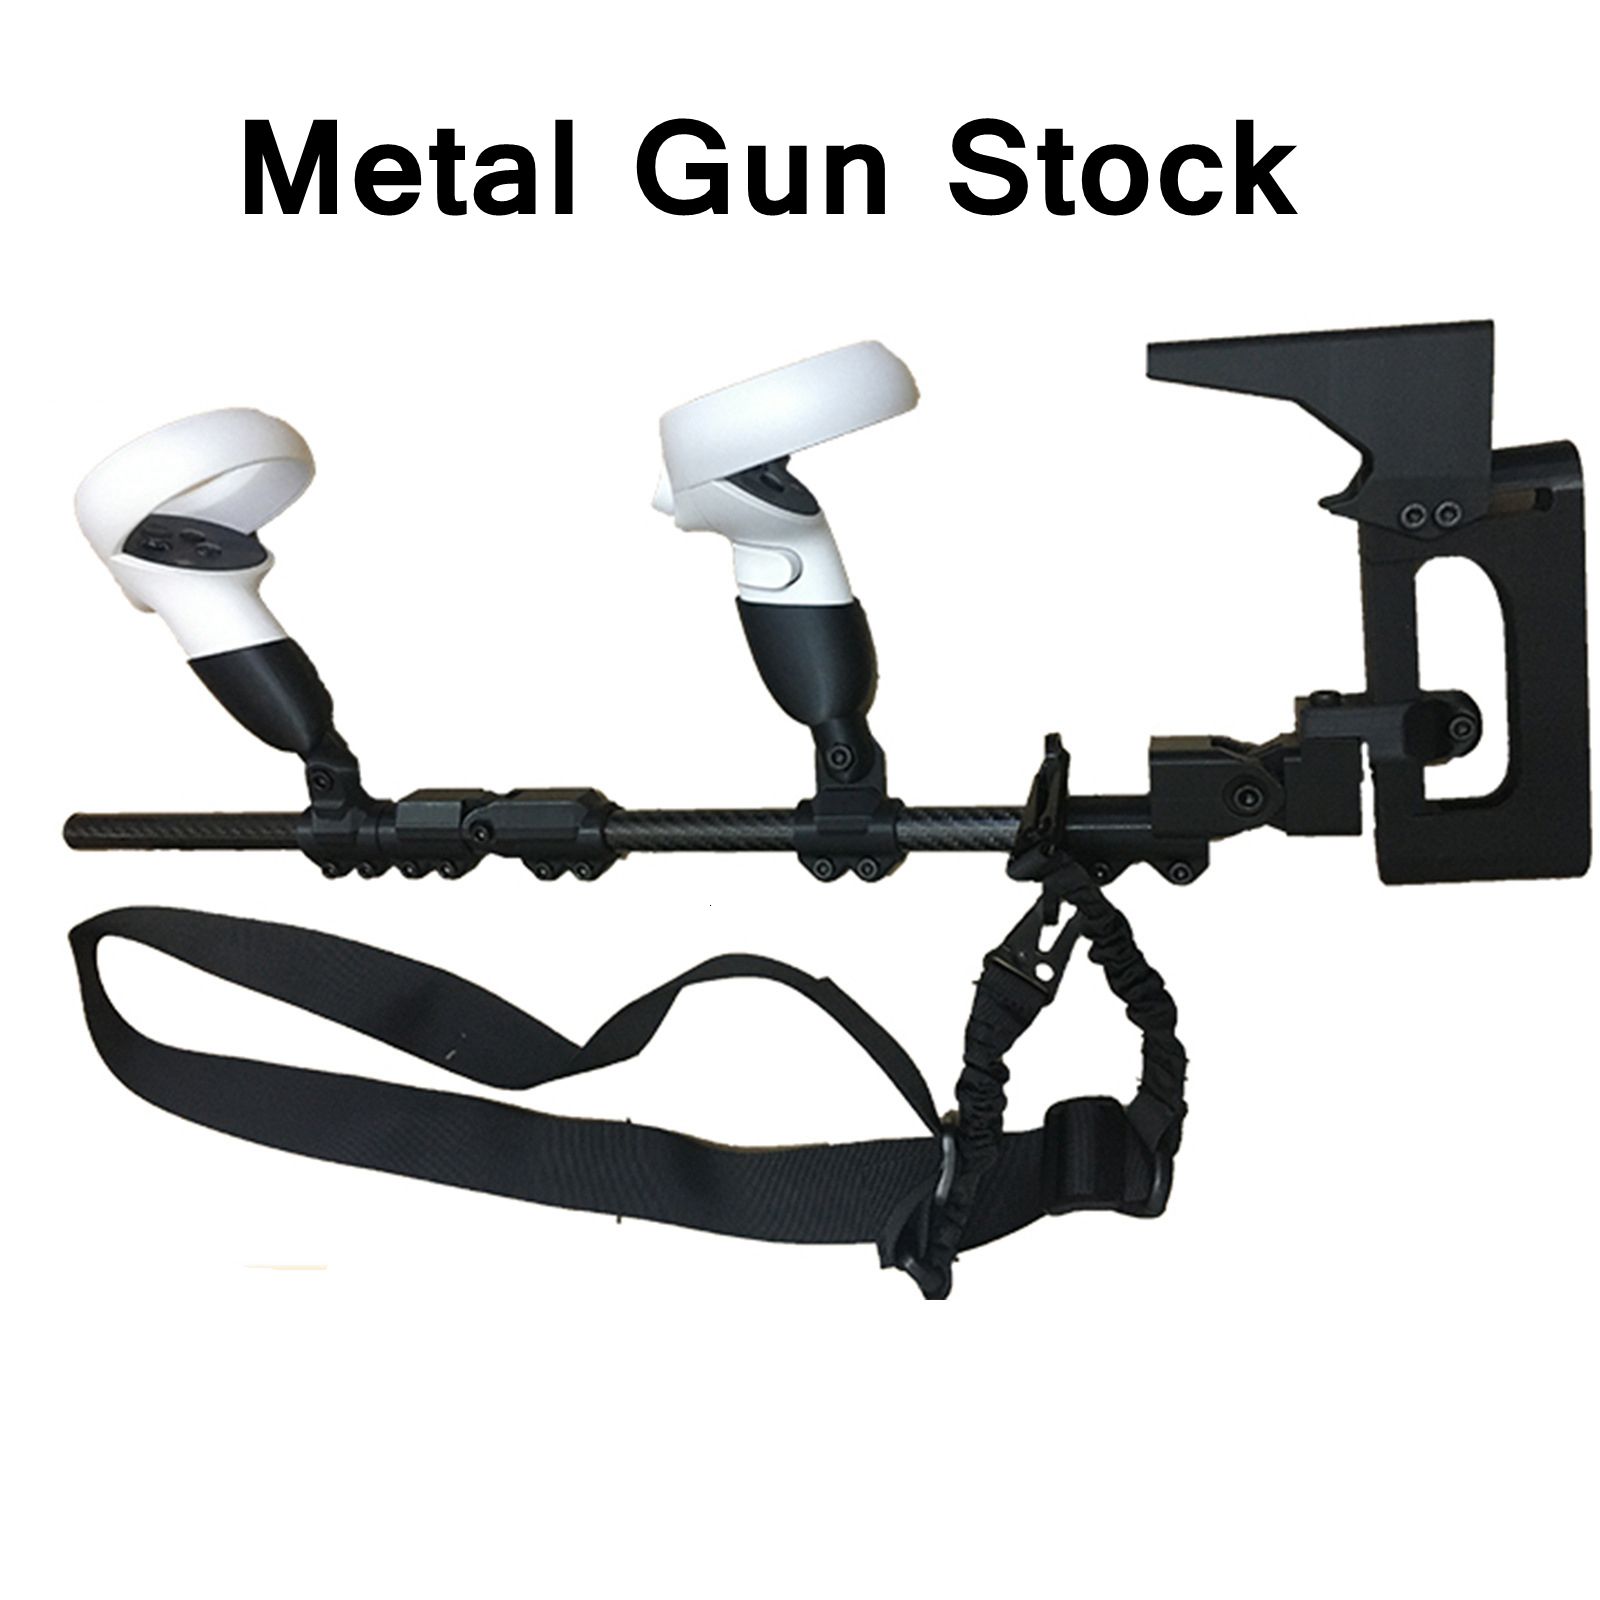 Options:Metal Gun Stock